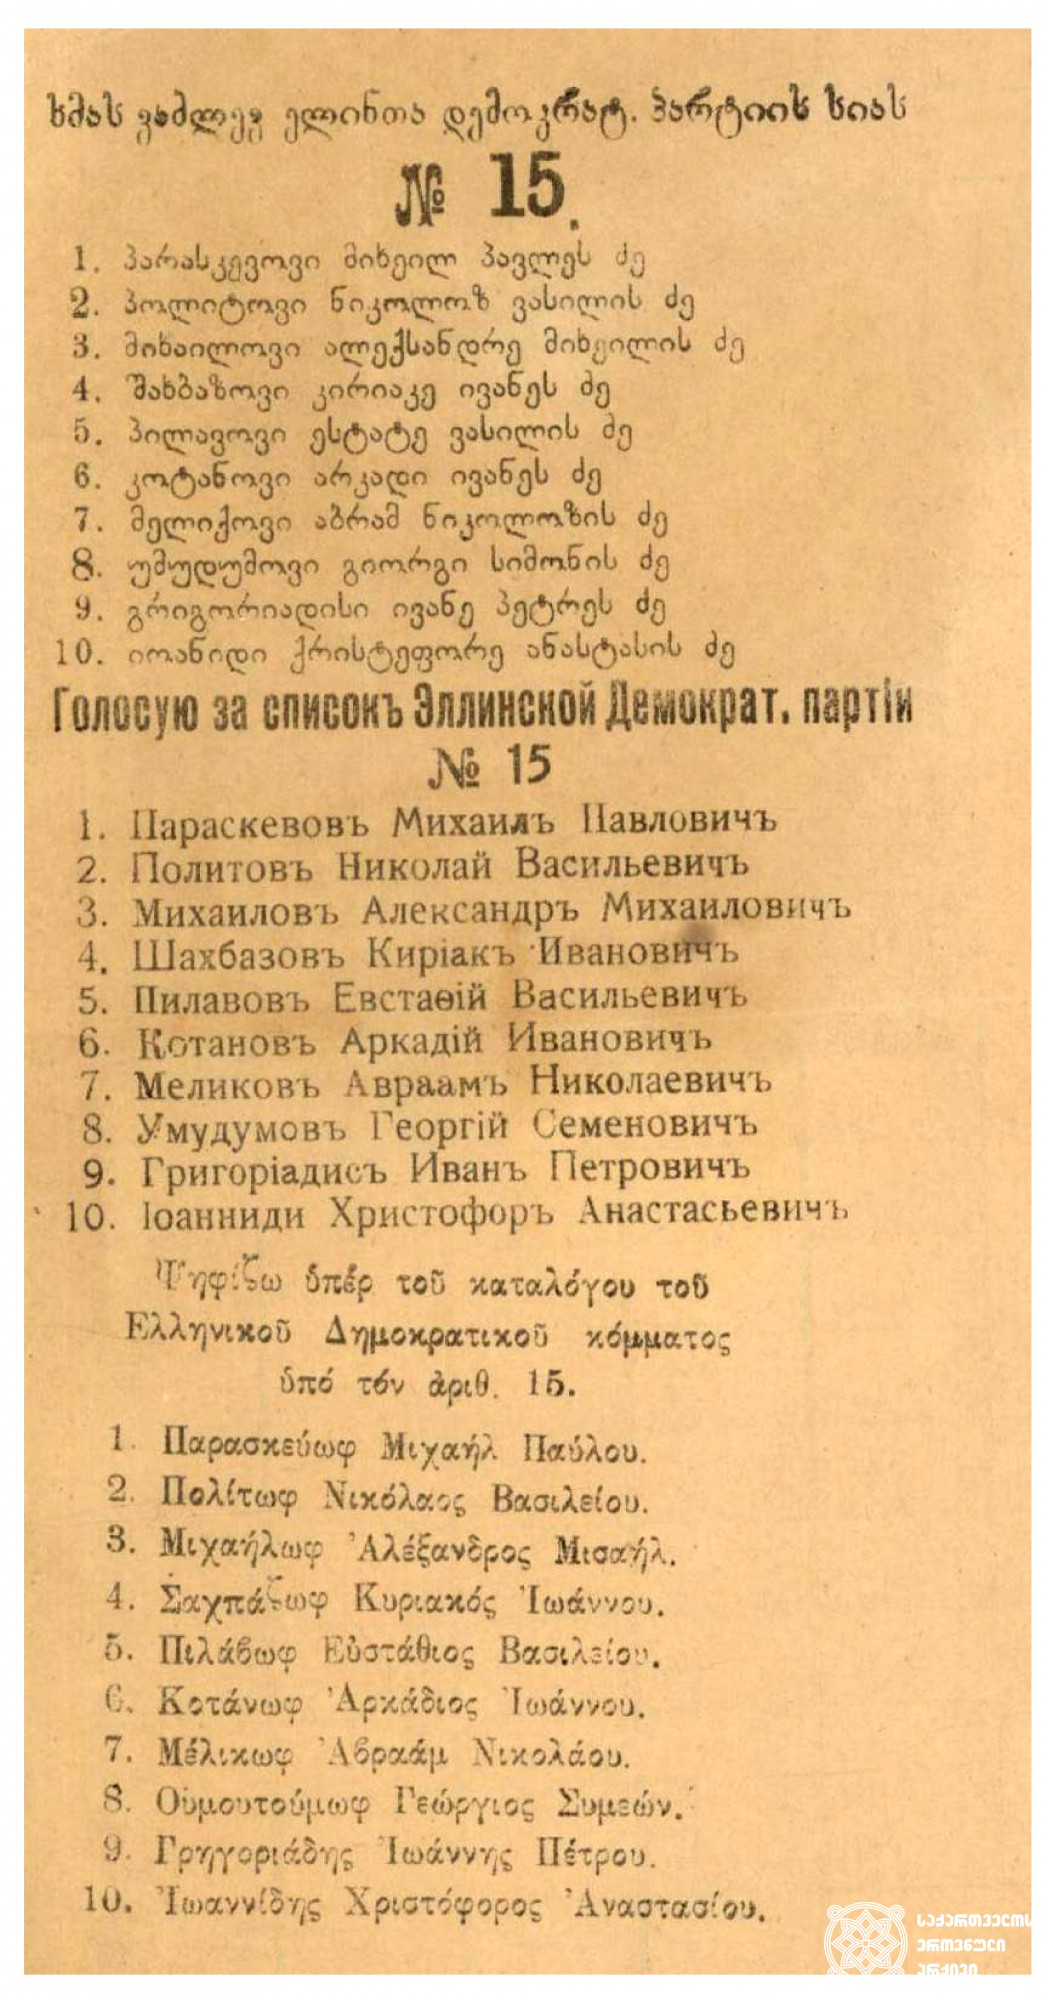 ელინთა დემოკრატიული პარტიის სია. <br>
1919 წელი. <br>
List of the Hellenic Democratic Party. <br>
1919.